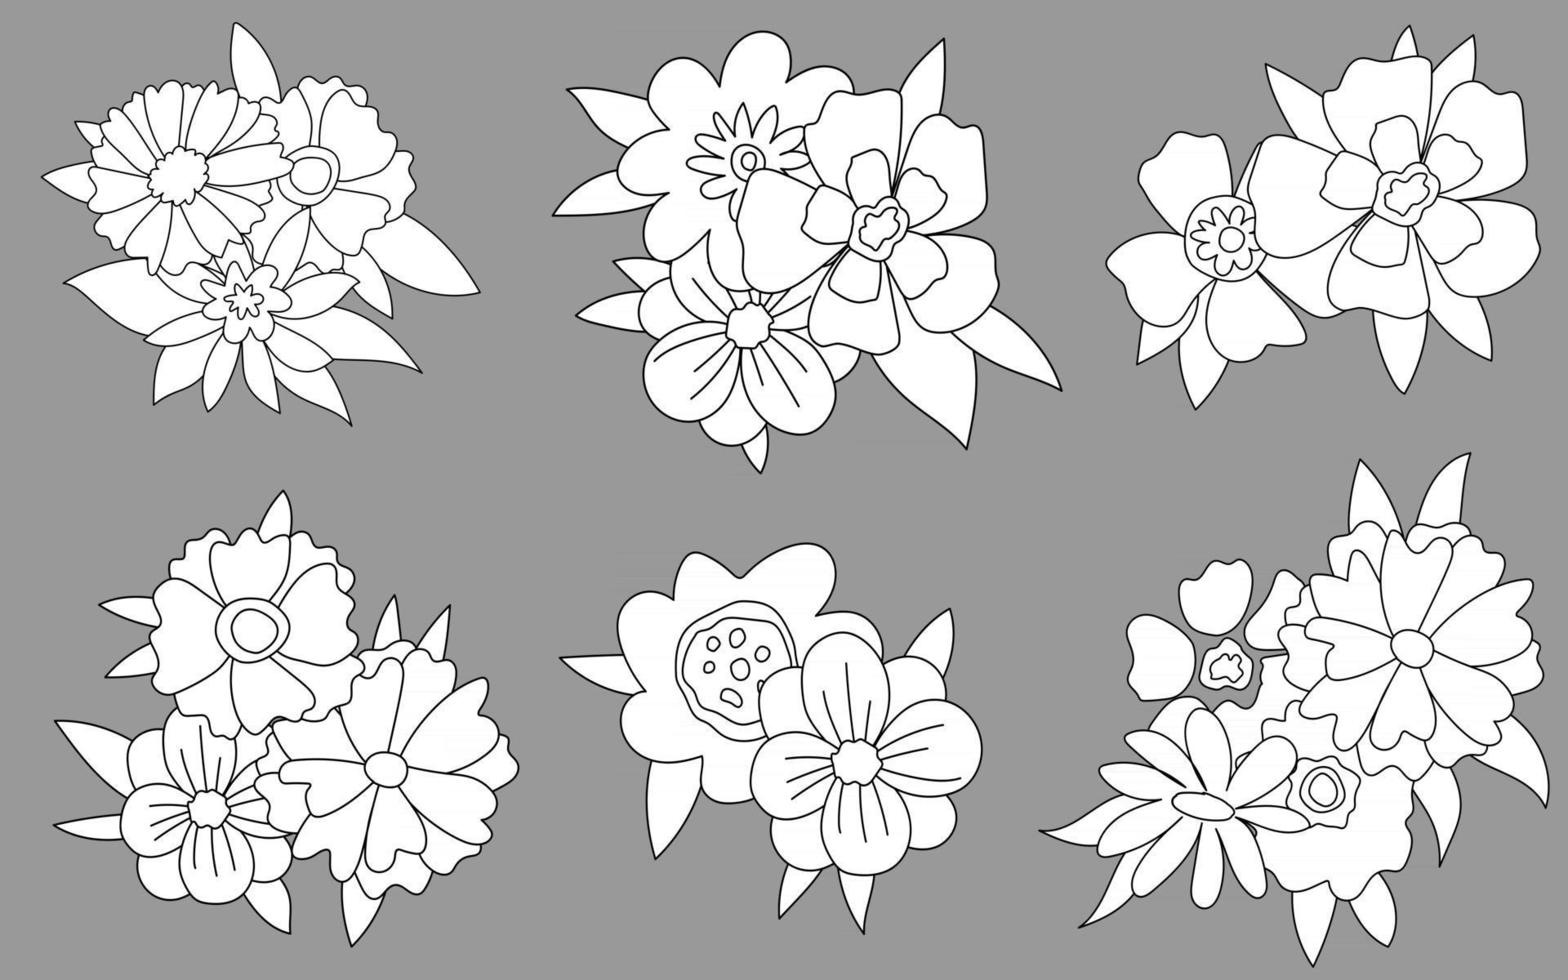 süße Kritzeleien Blumen schwarz-weiße Linie Set handgezeichnete Vektorgrafiken Skizze für ein Tattoo vektor